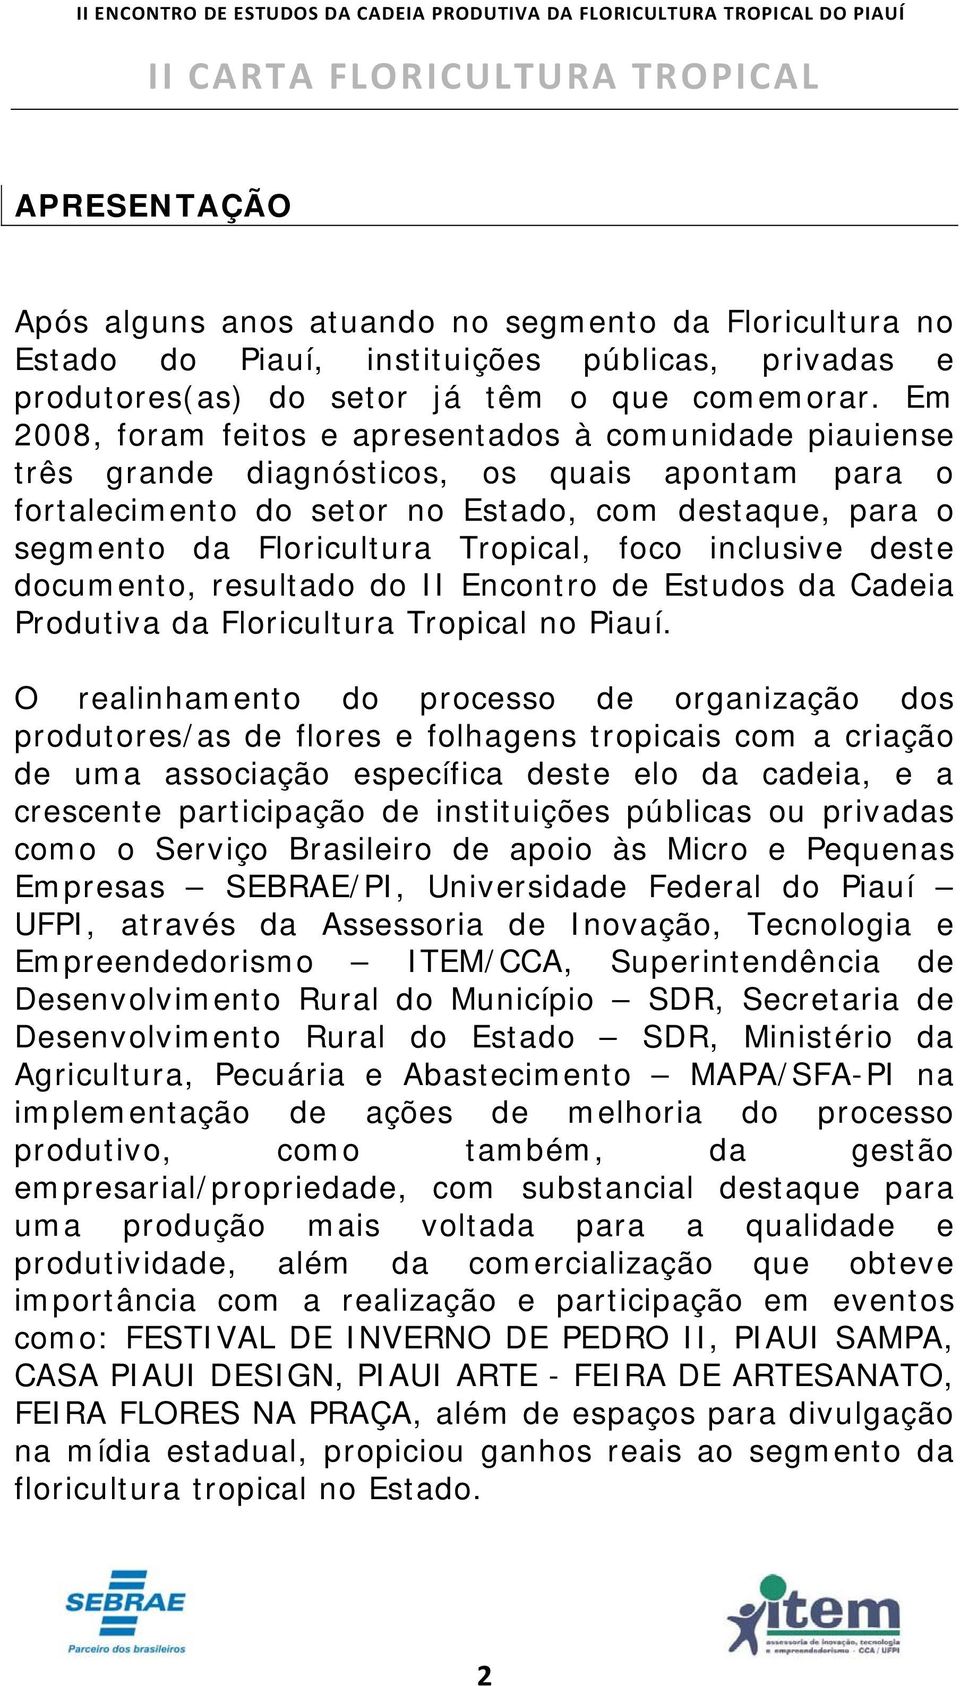 Tropical, foco inclusive deste documento, resultado do II Encontro de Estudos da Cadeia Produtiva da Floricultura Tropical no Piauí.